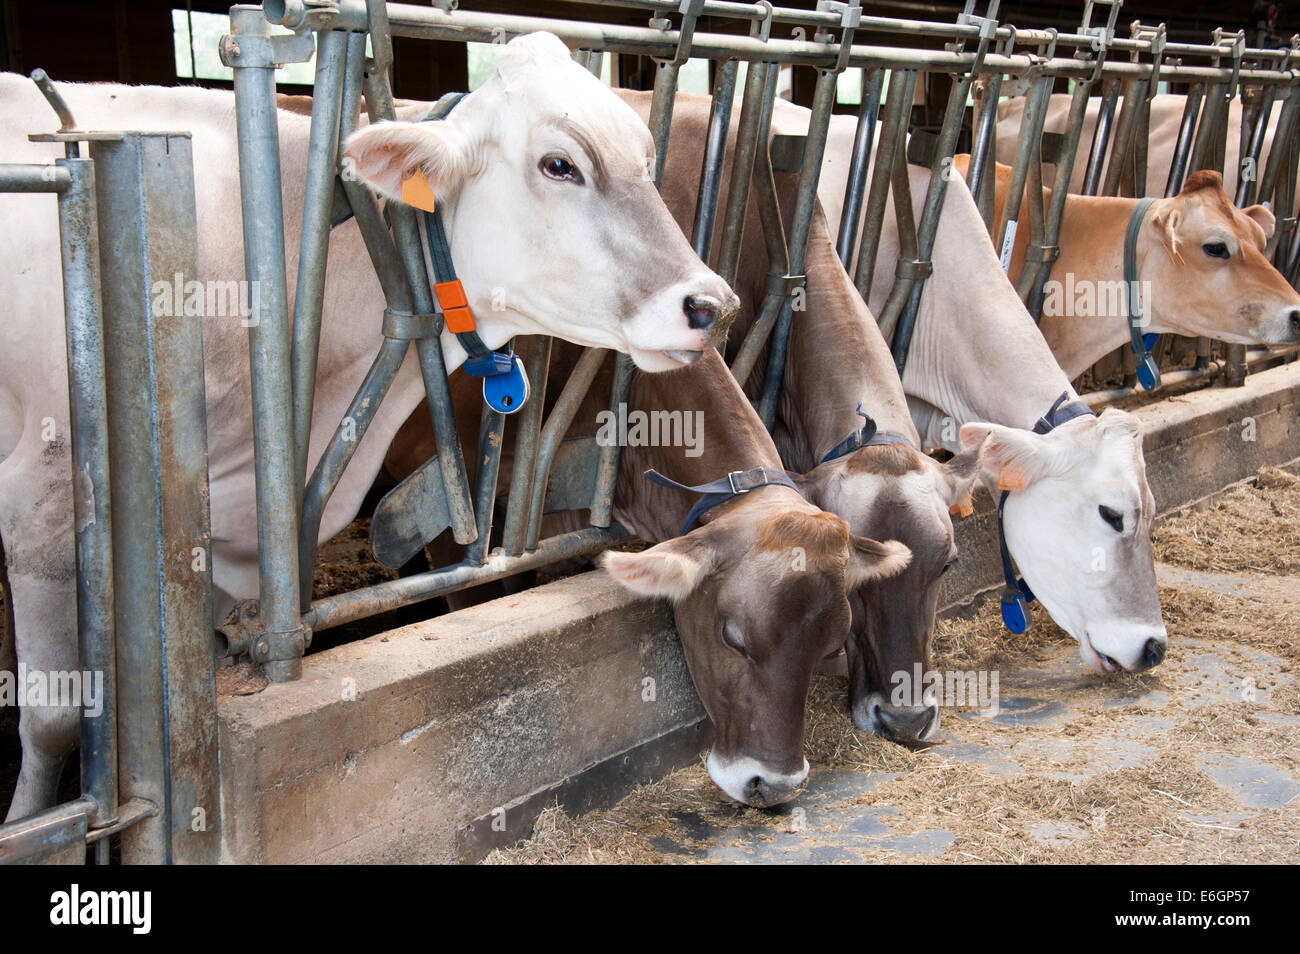 Ligne d'alimentation des vaches laitières dans une étable dans une ferme Banque D'Images